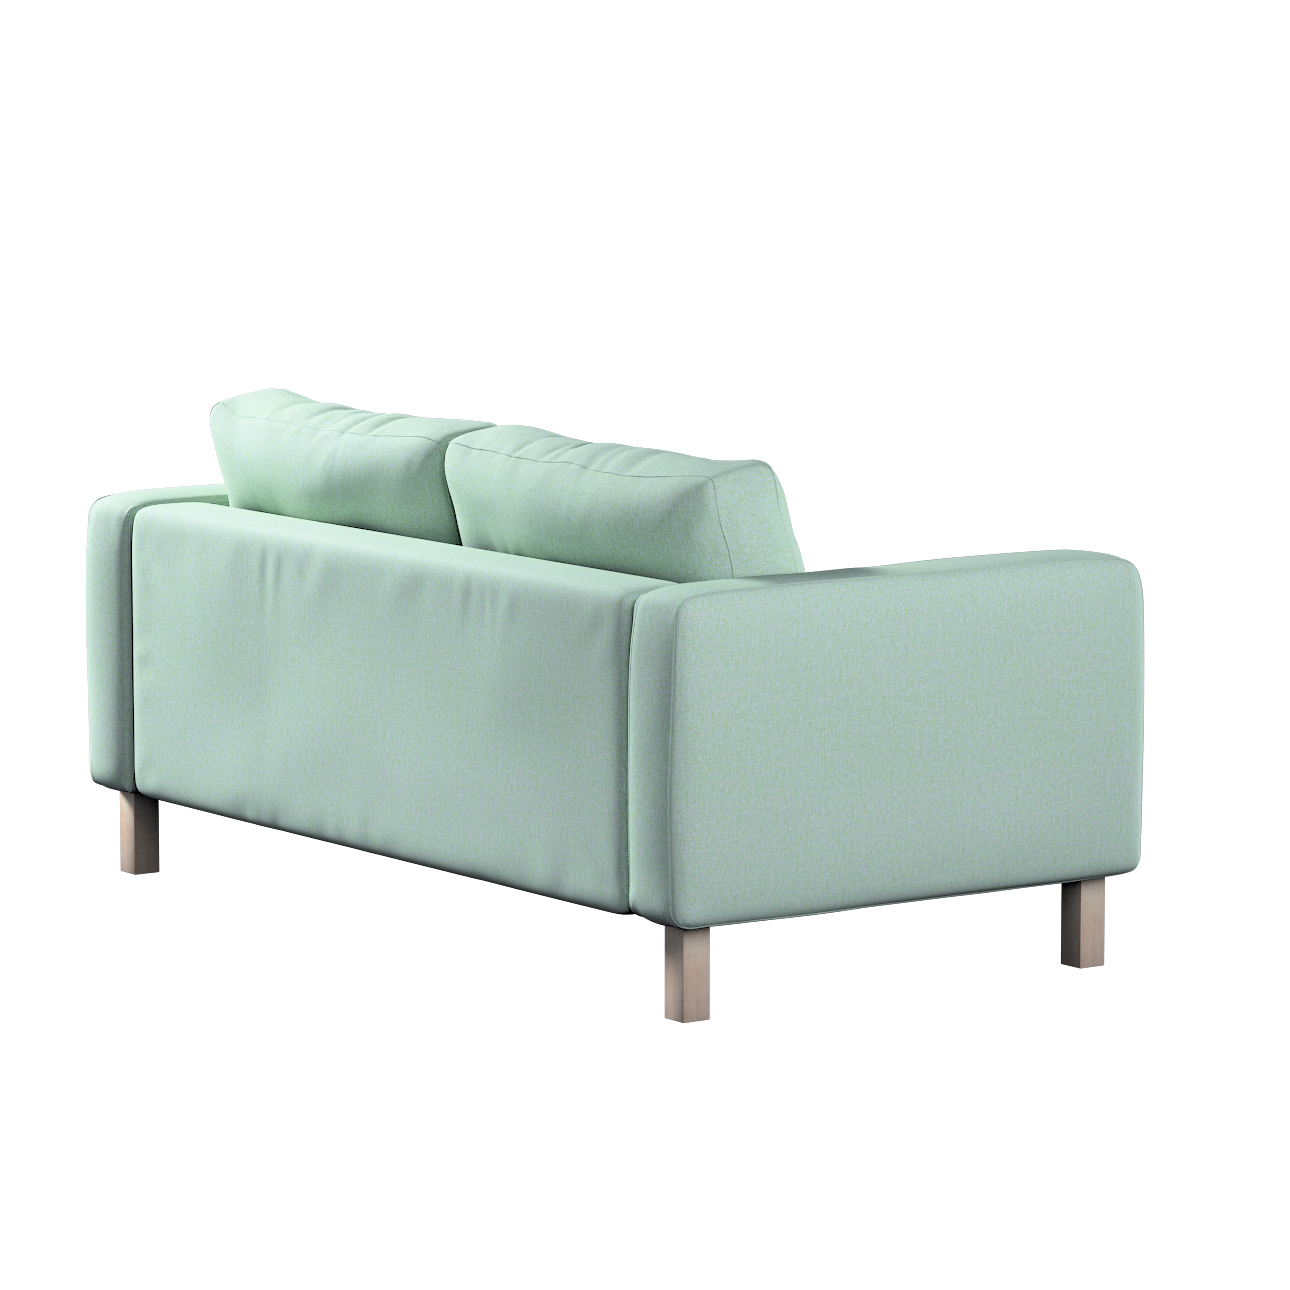 Bezug für Karlstad 2-Sitzer Sofa nicht ausklappbar, pastellblau, Sofahusse, günstig online kaufen